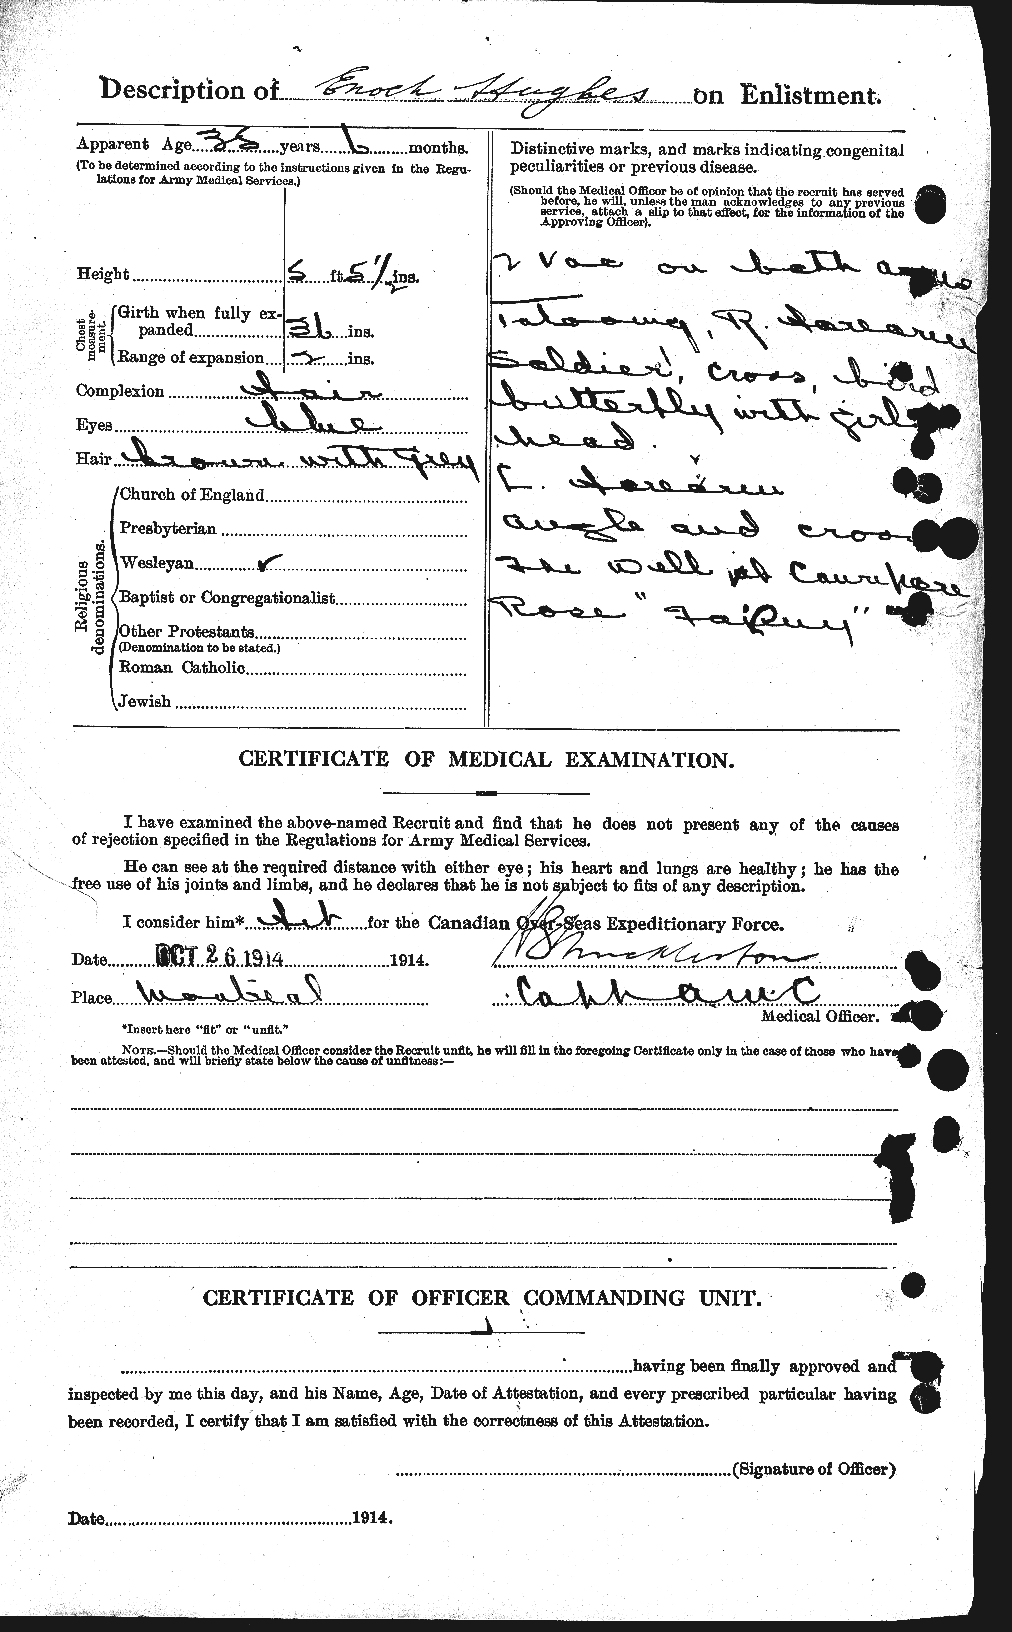 Dossiers du Personnel de la Première Guerre mondiale - CEC 402706b